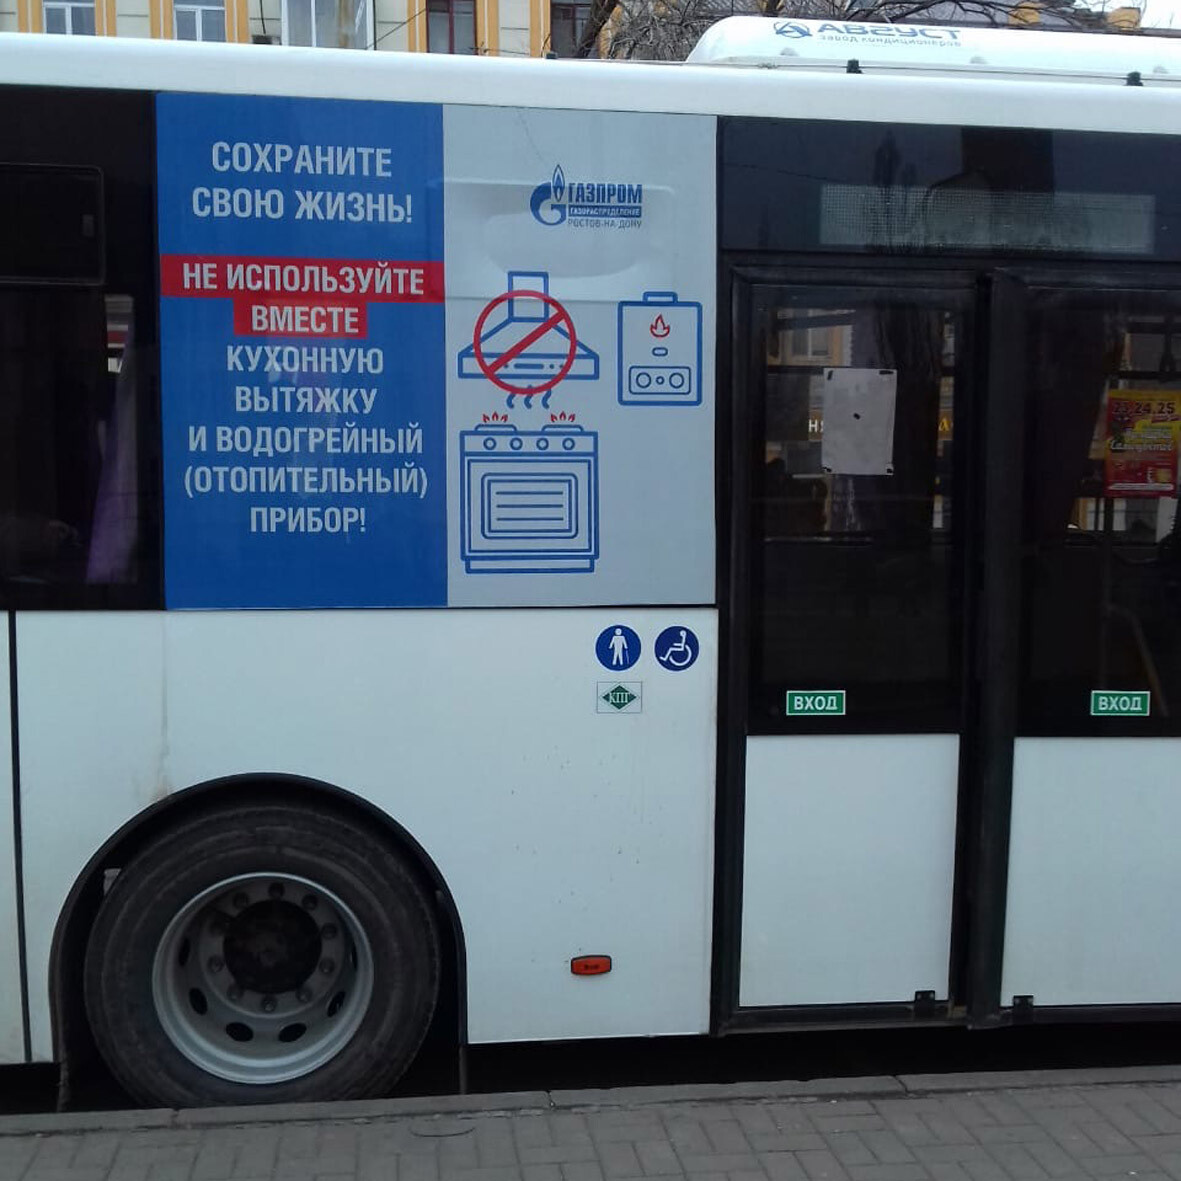 Пример размещения рекламы на автобусе